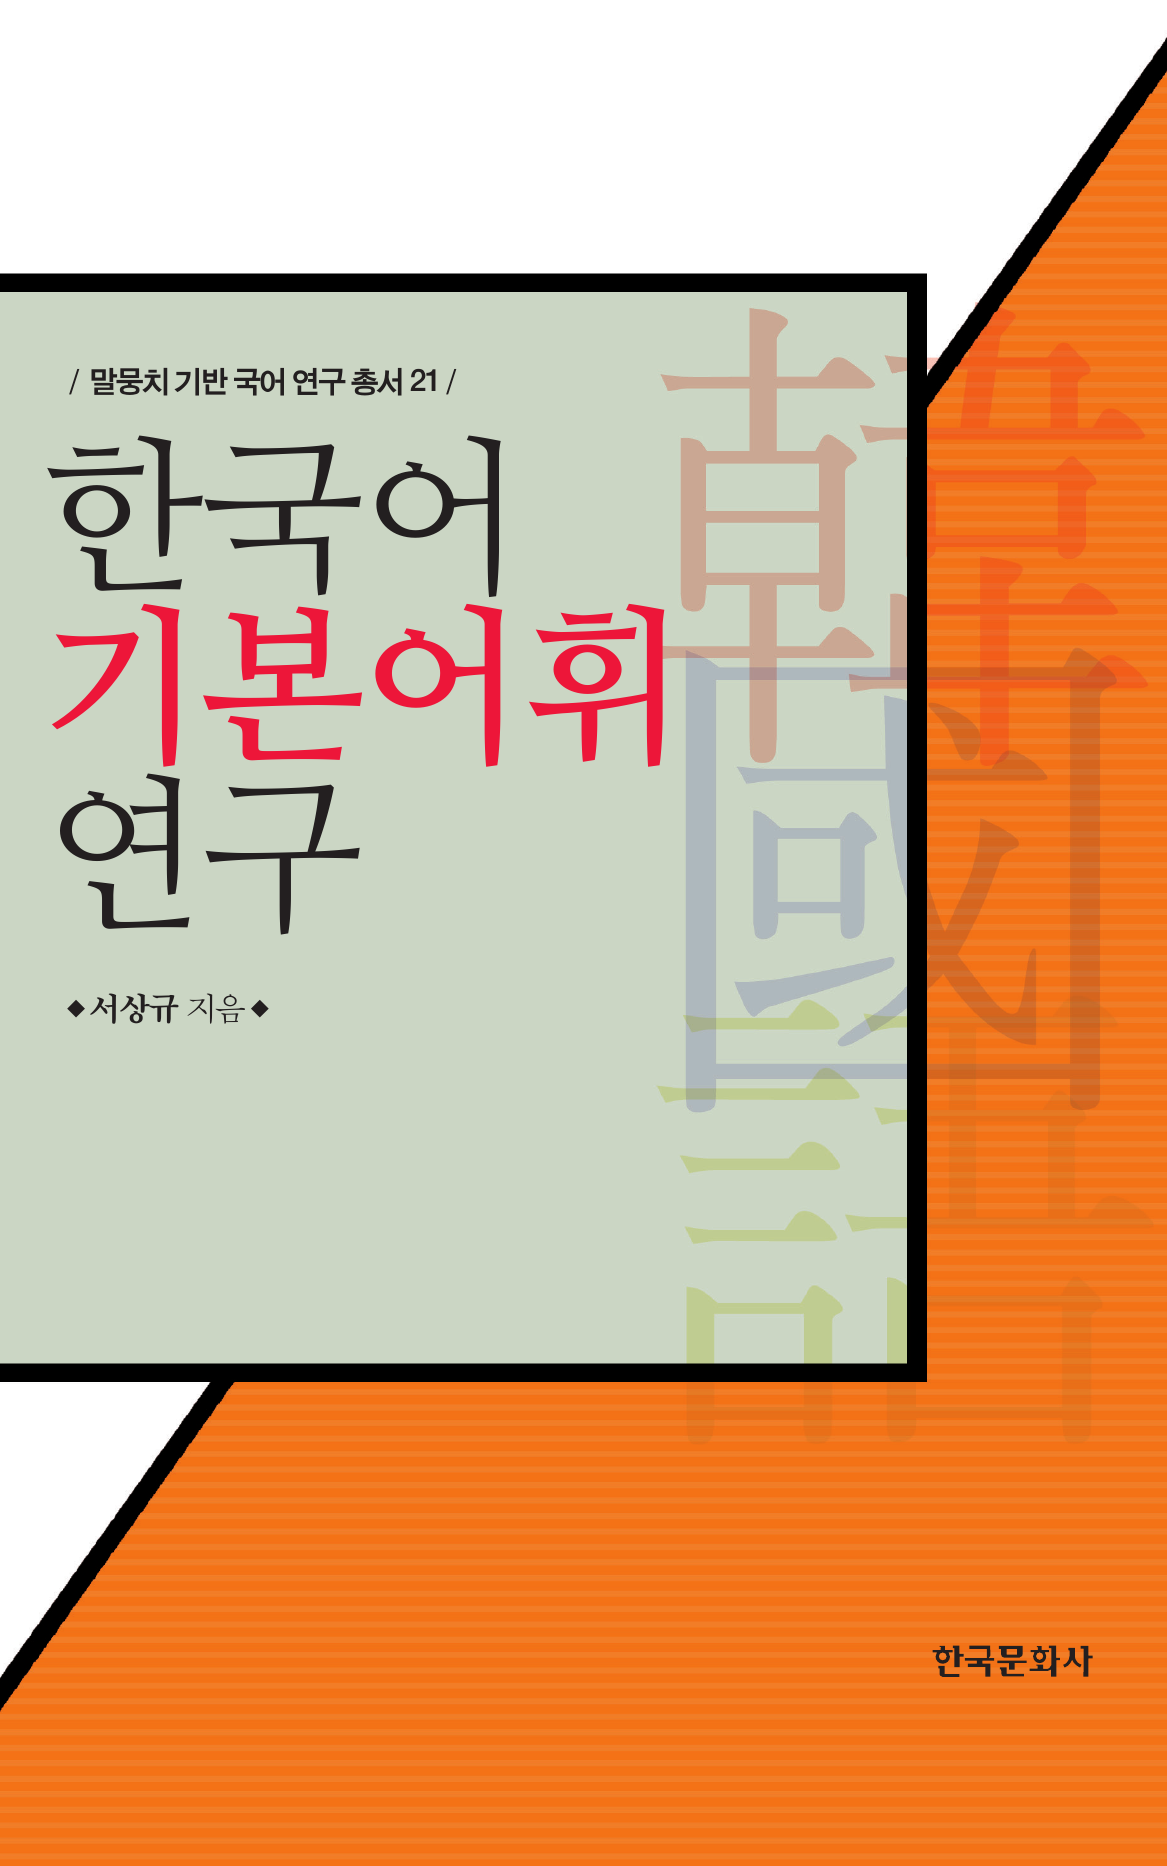 한국어 기본어휘 연구